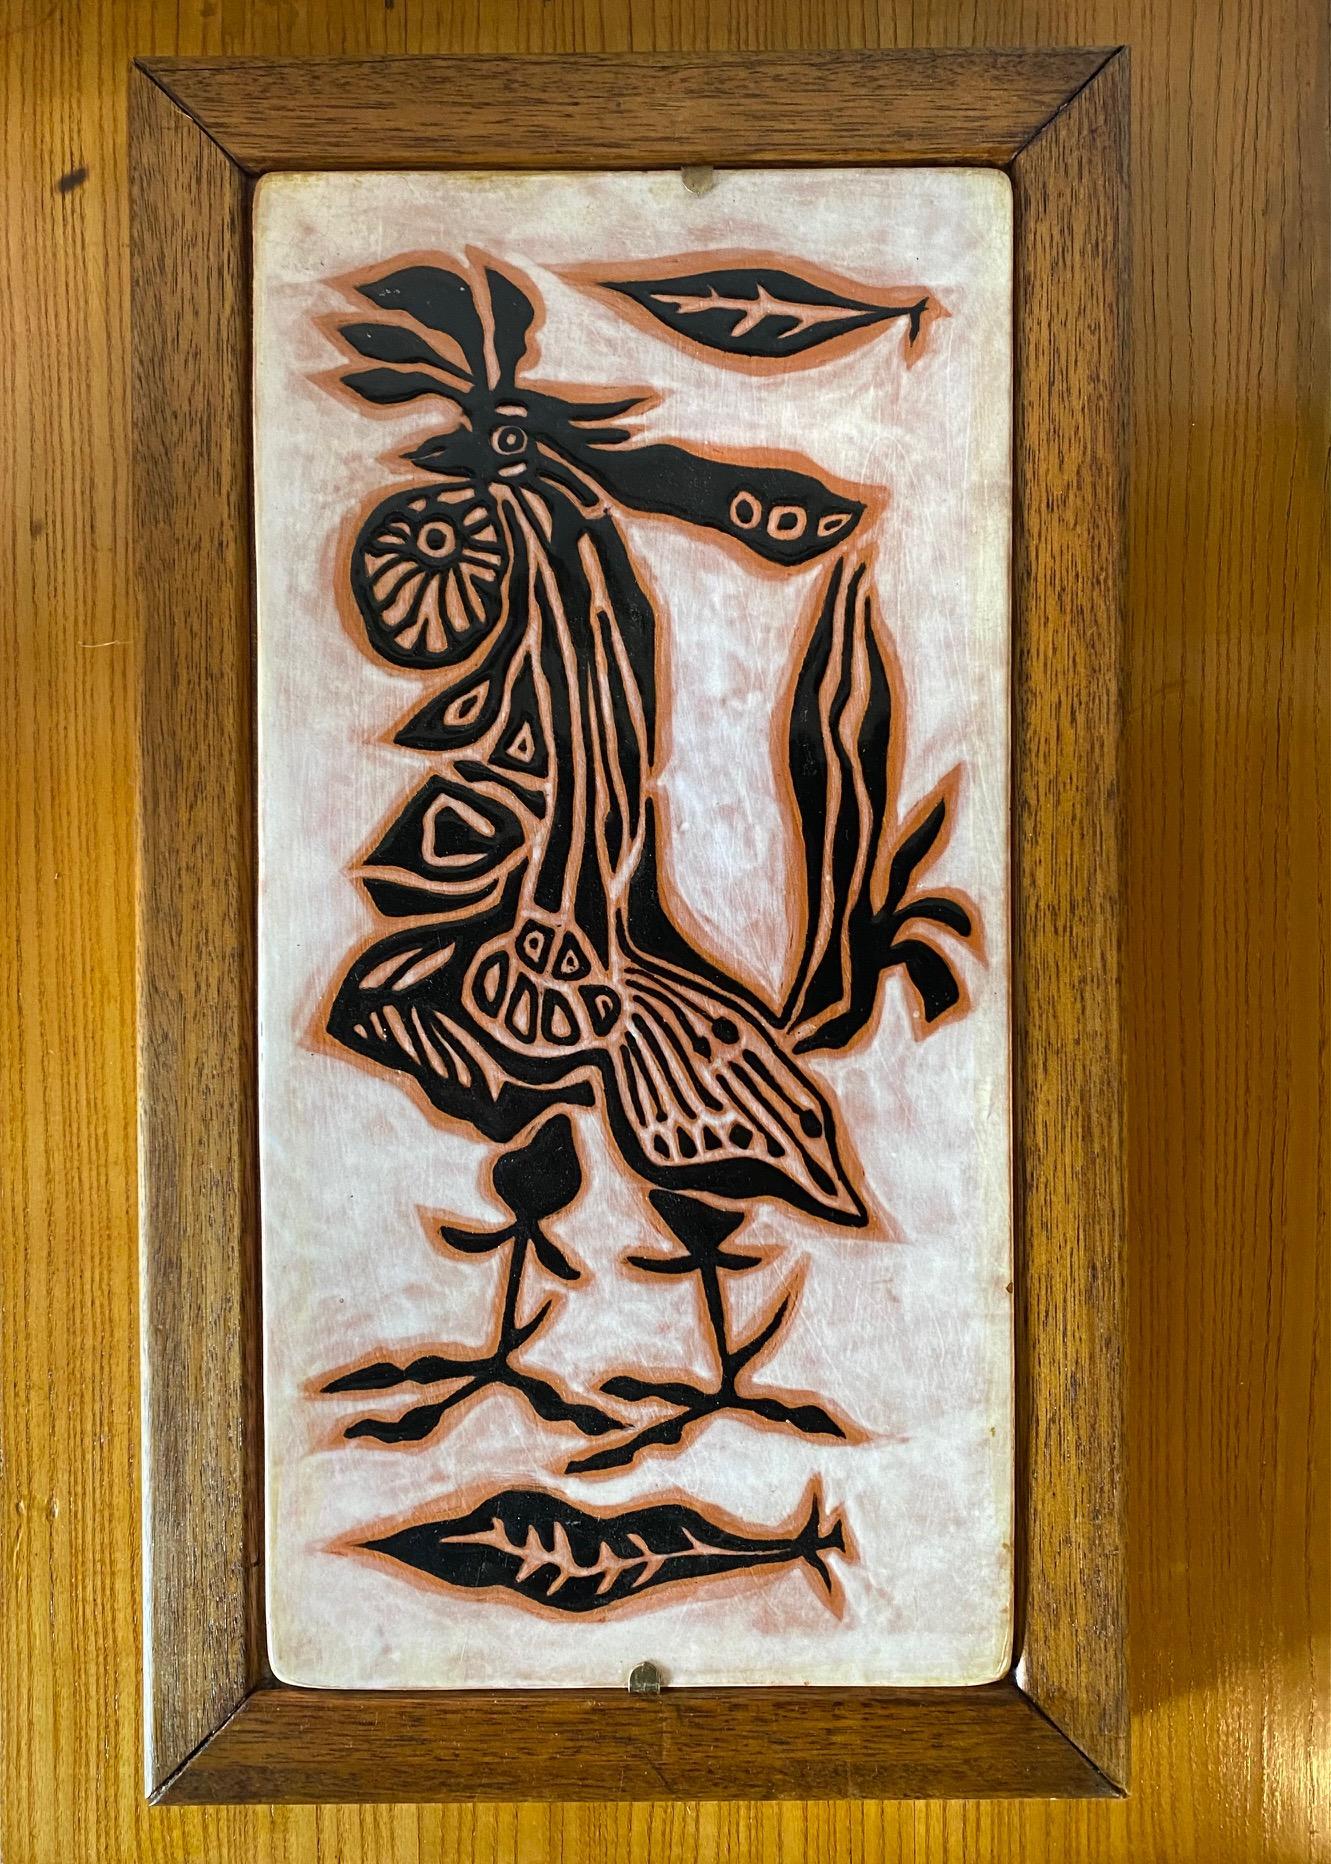 Keramische Tafel von Jean Lurçat, Sant Vicens, Frankreich, 1952-65
Jean Lurçat, der für seine Wandteppiche bekannt ist, schuf zwischen 1952 und 1965 während seines Aufenthalts in Sant Vincens, dem französischen Teil Kataloniens, verschiedene